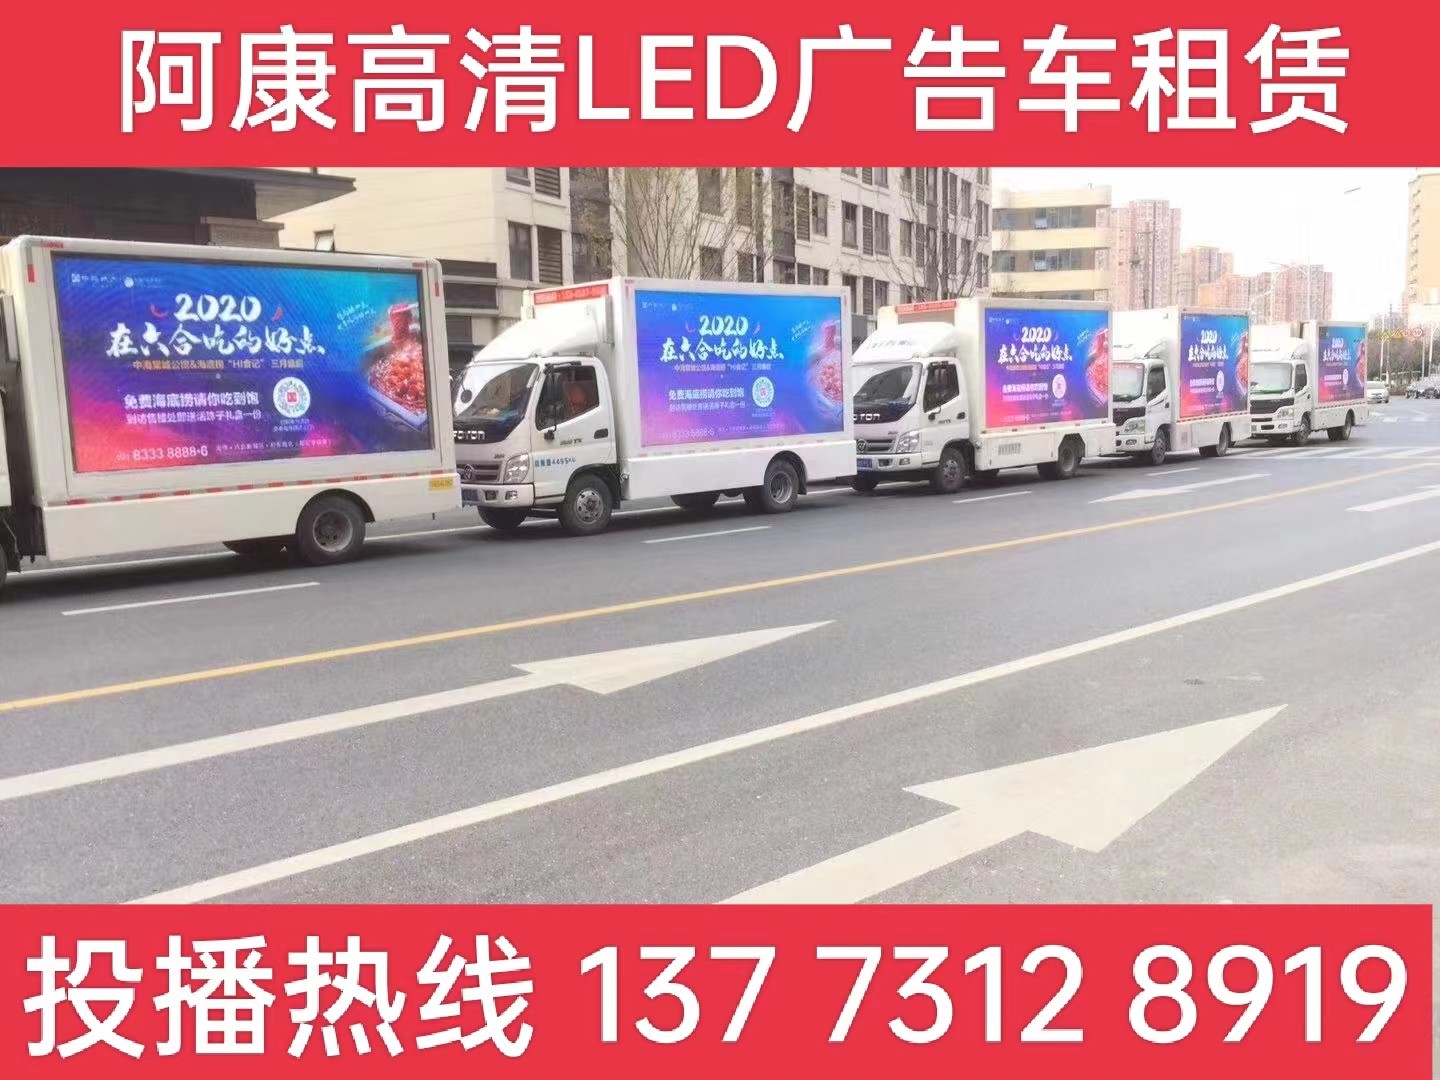 金坛宣传车出租-海底捞LED广告